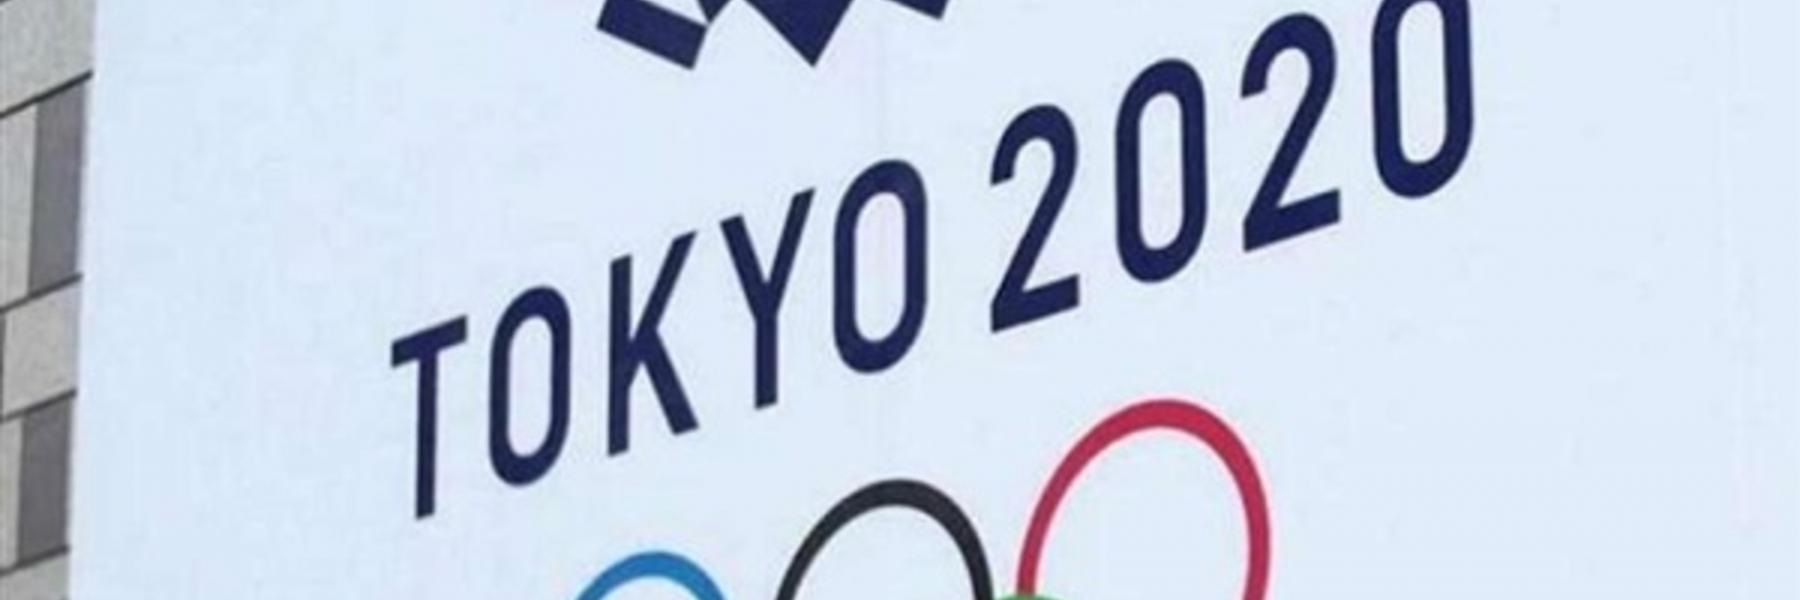 كورونا ليست الوحيدة... مشكلات واجهت أولمبياد طوكيو 2020